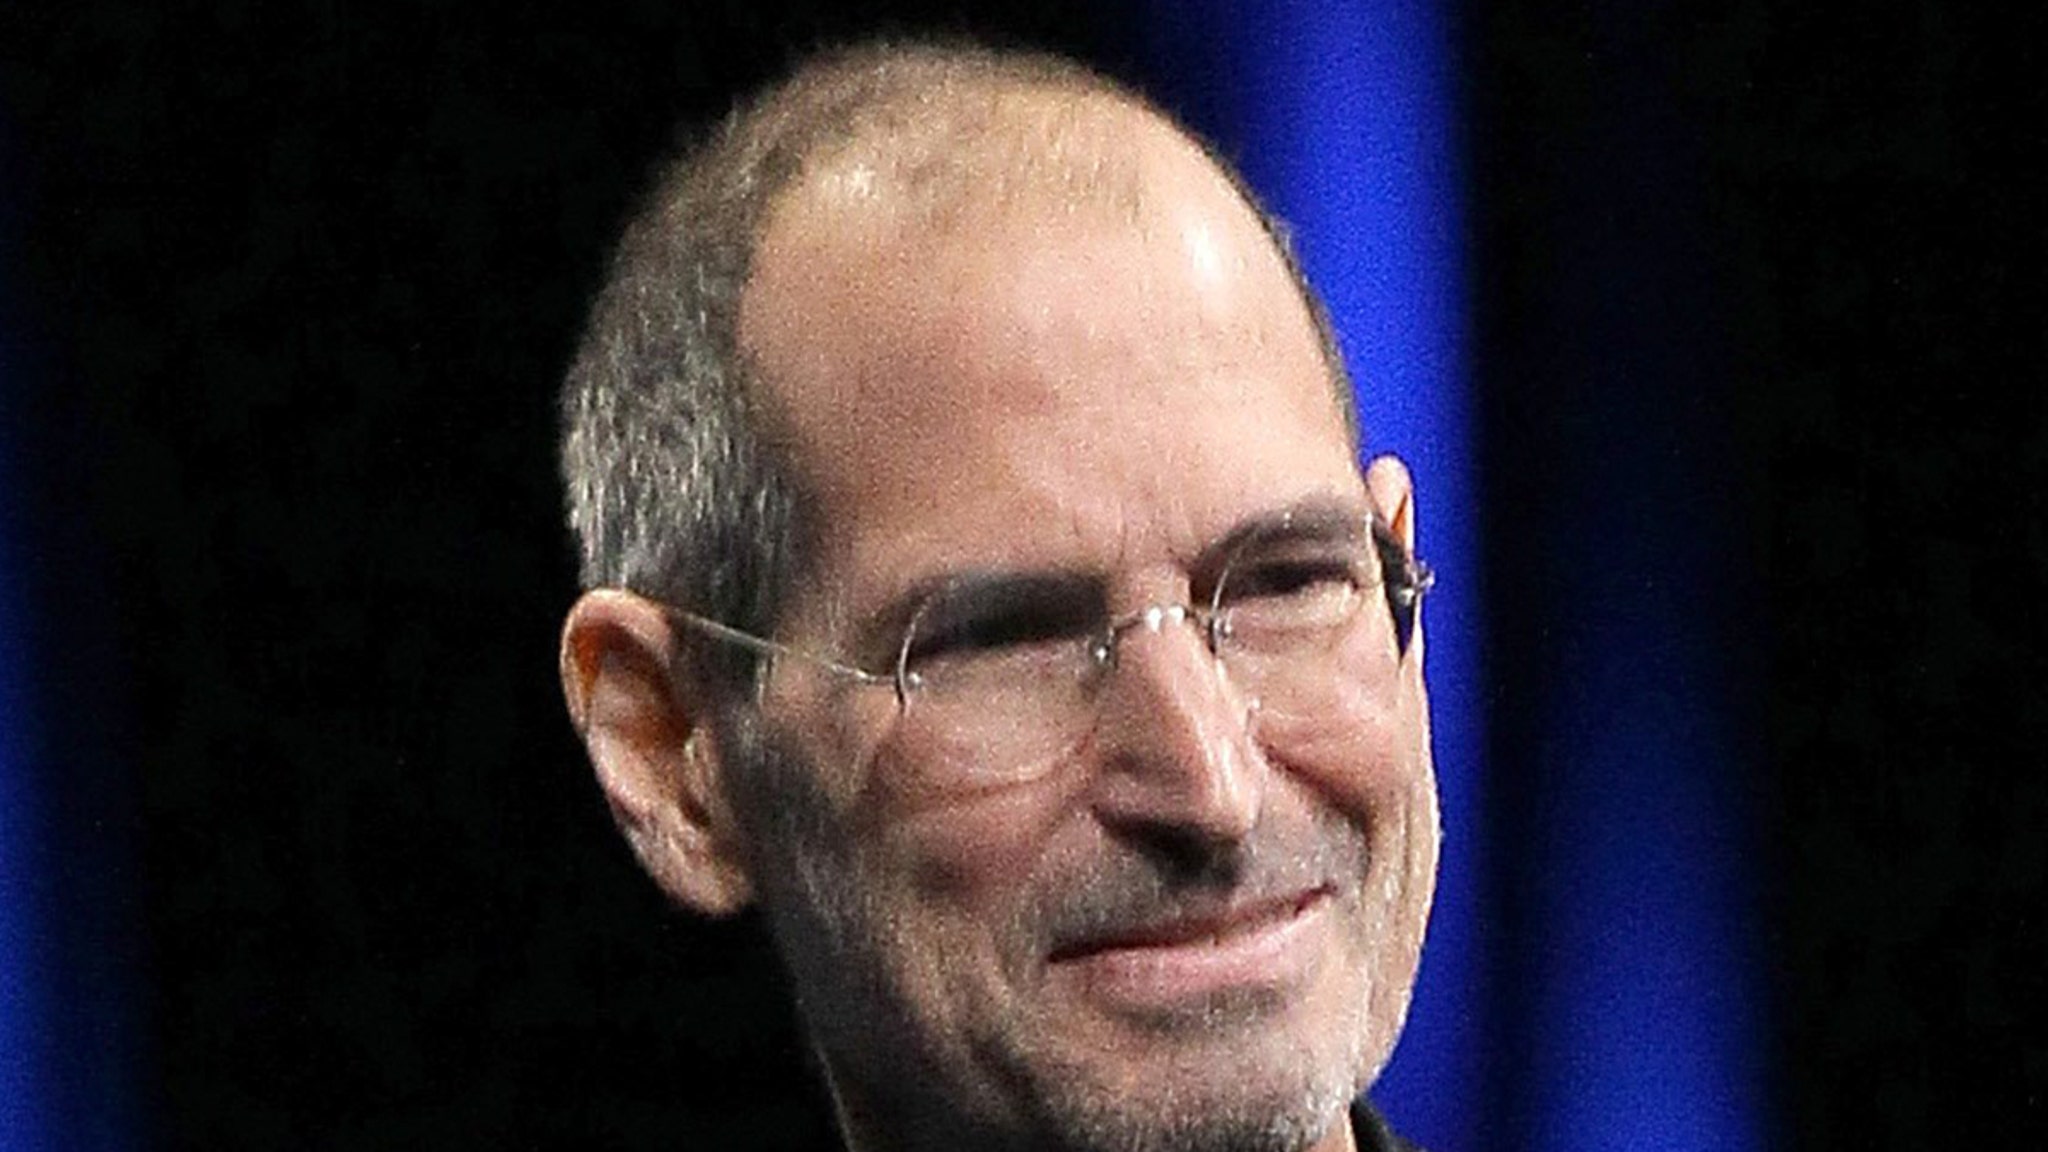 Stīvs Džobss parakstīja apbalvojumu Apple darbiniekam pārdošanai, kas ir rets paraksts